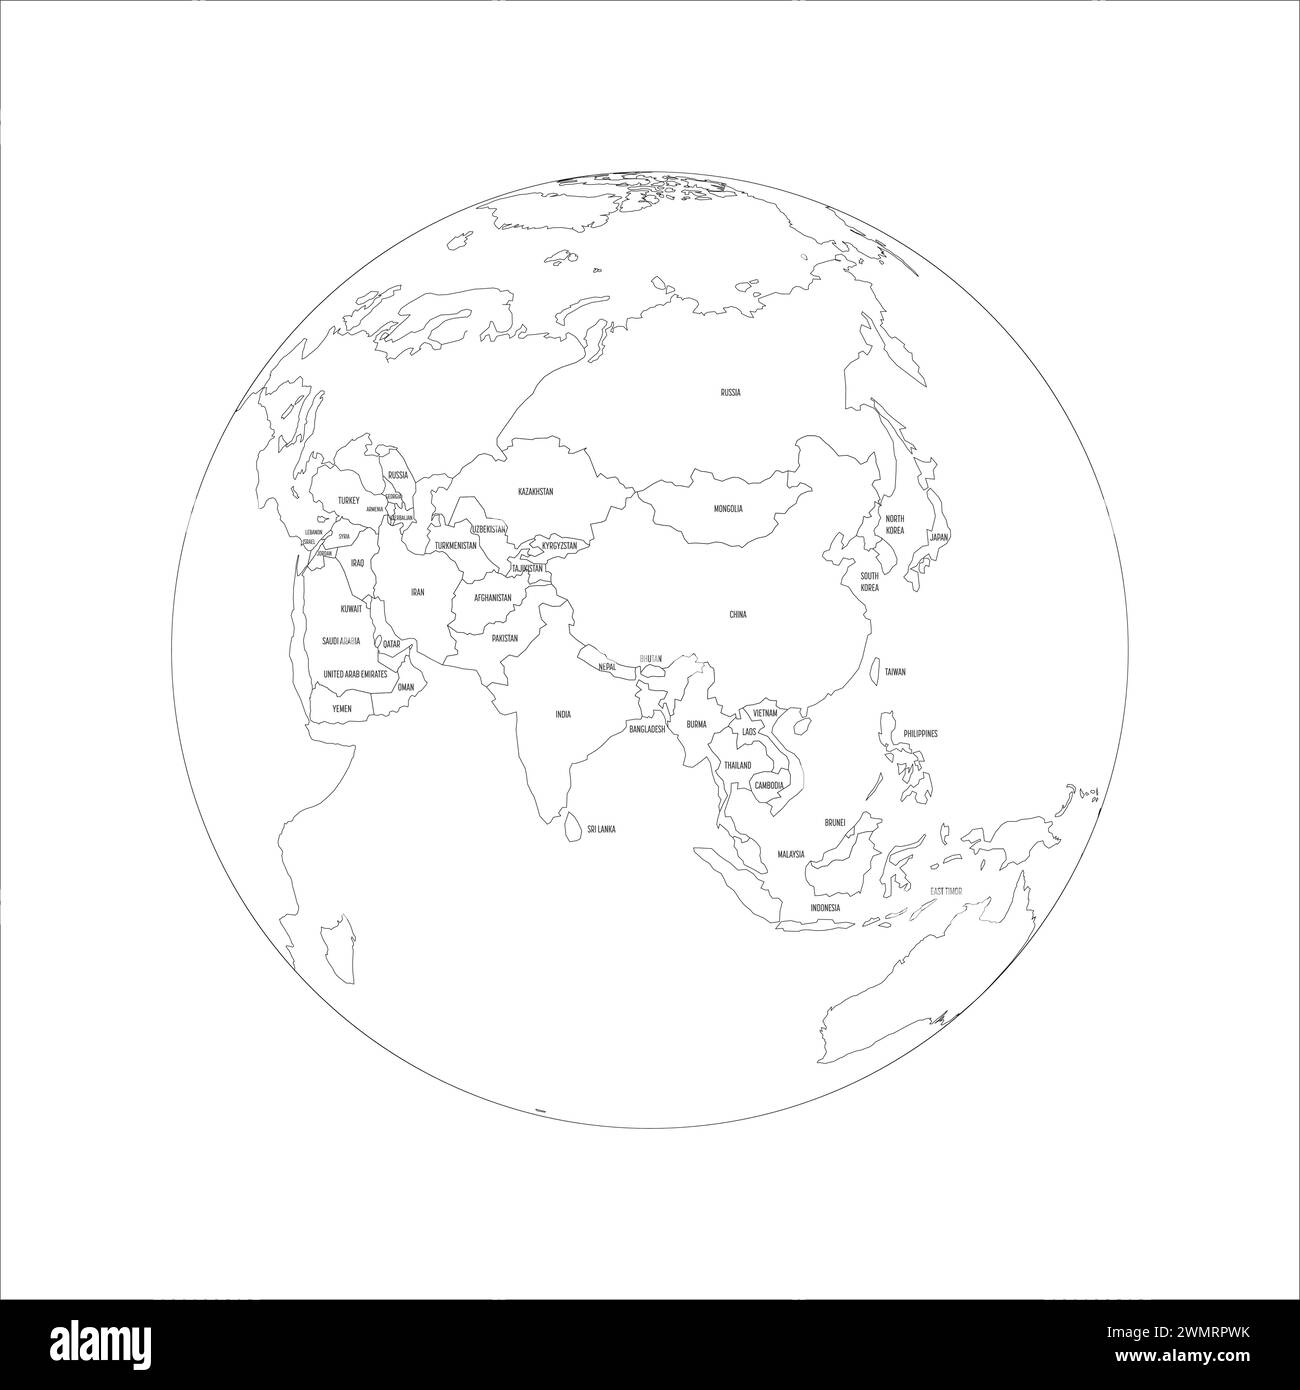 Carte politique de l'Asie. Carte de contour noir mince avec étiquettes de nom de pays sur fond blanc. Projection ortographique. Illustration vectorielle Illustration de Vecteur